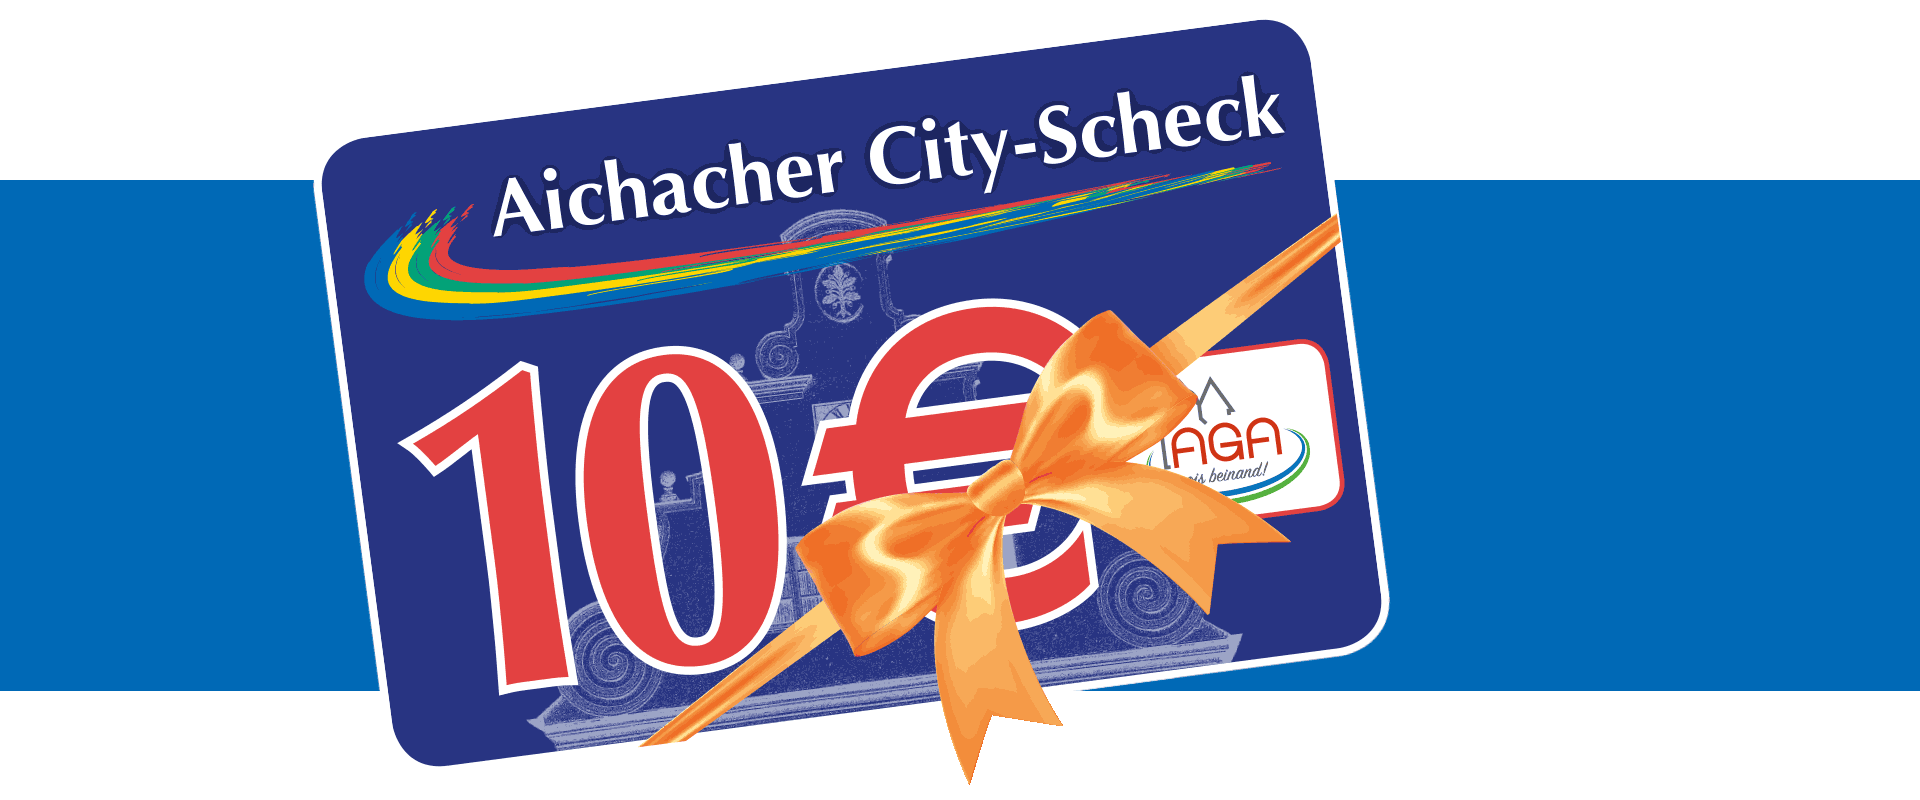 City-Scheck Aichach